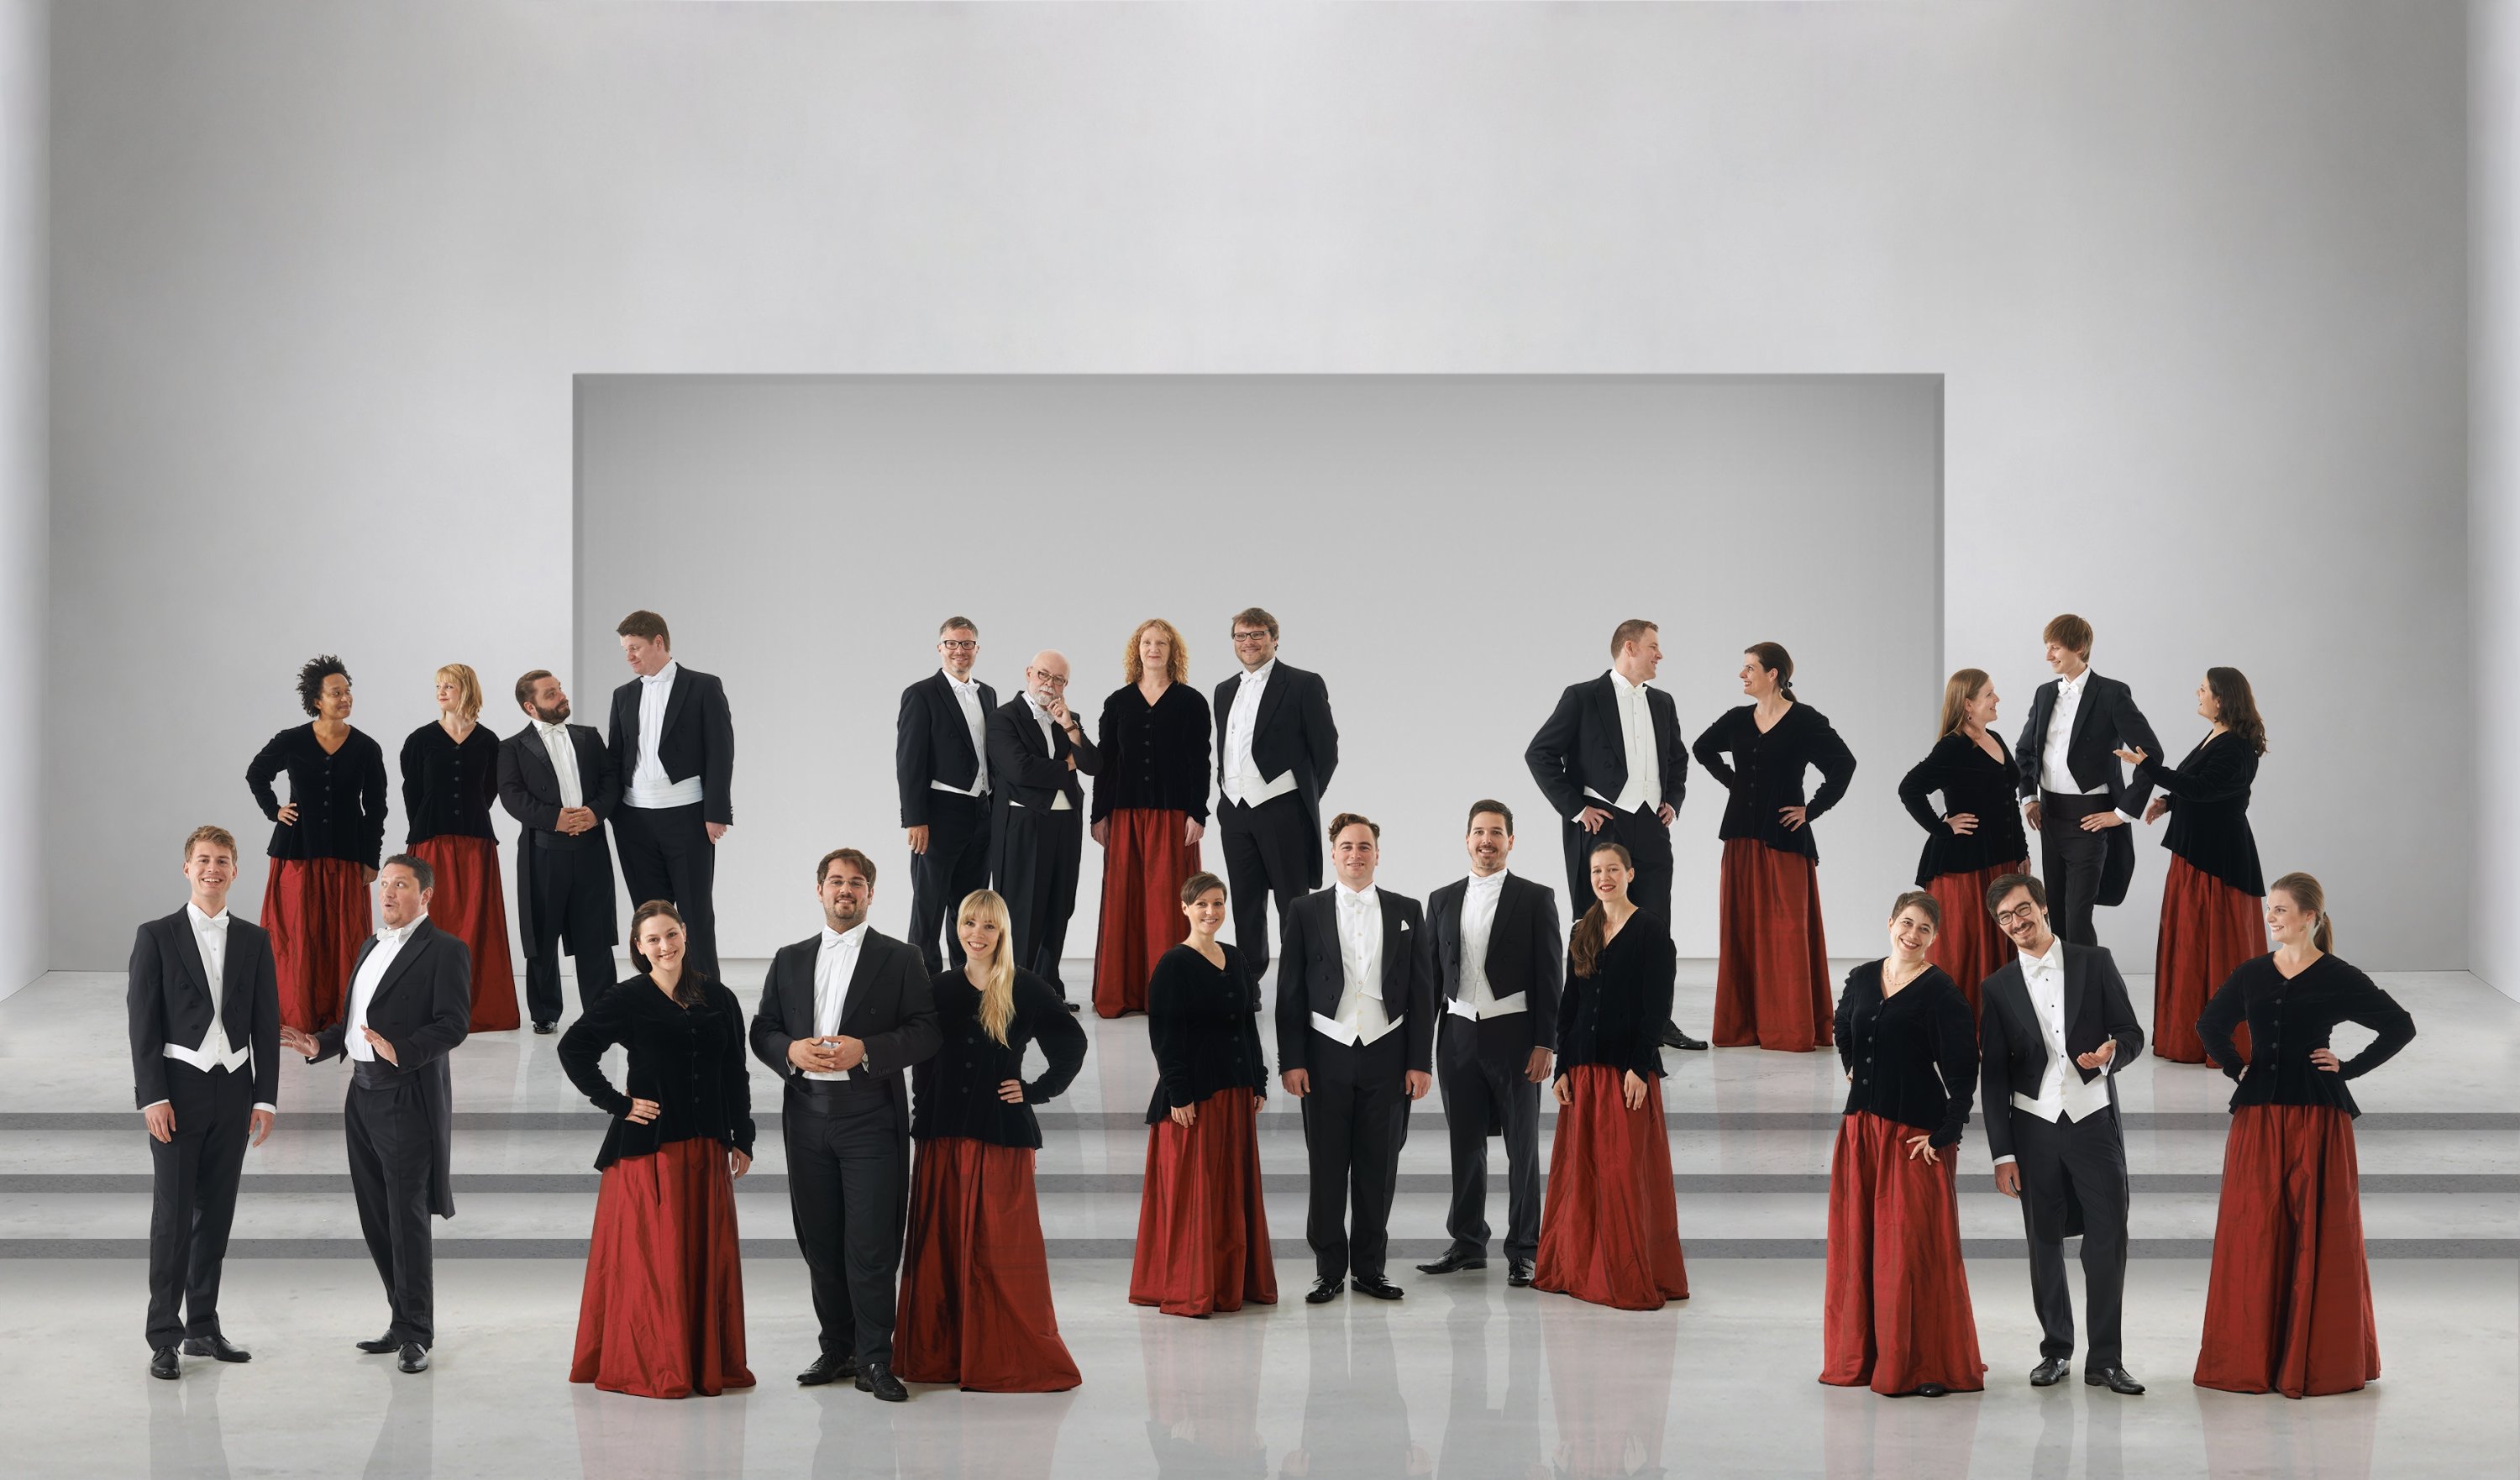 Kammerchor Stuttgart choir. 